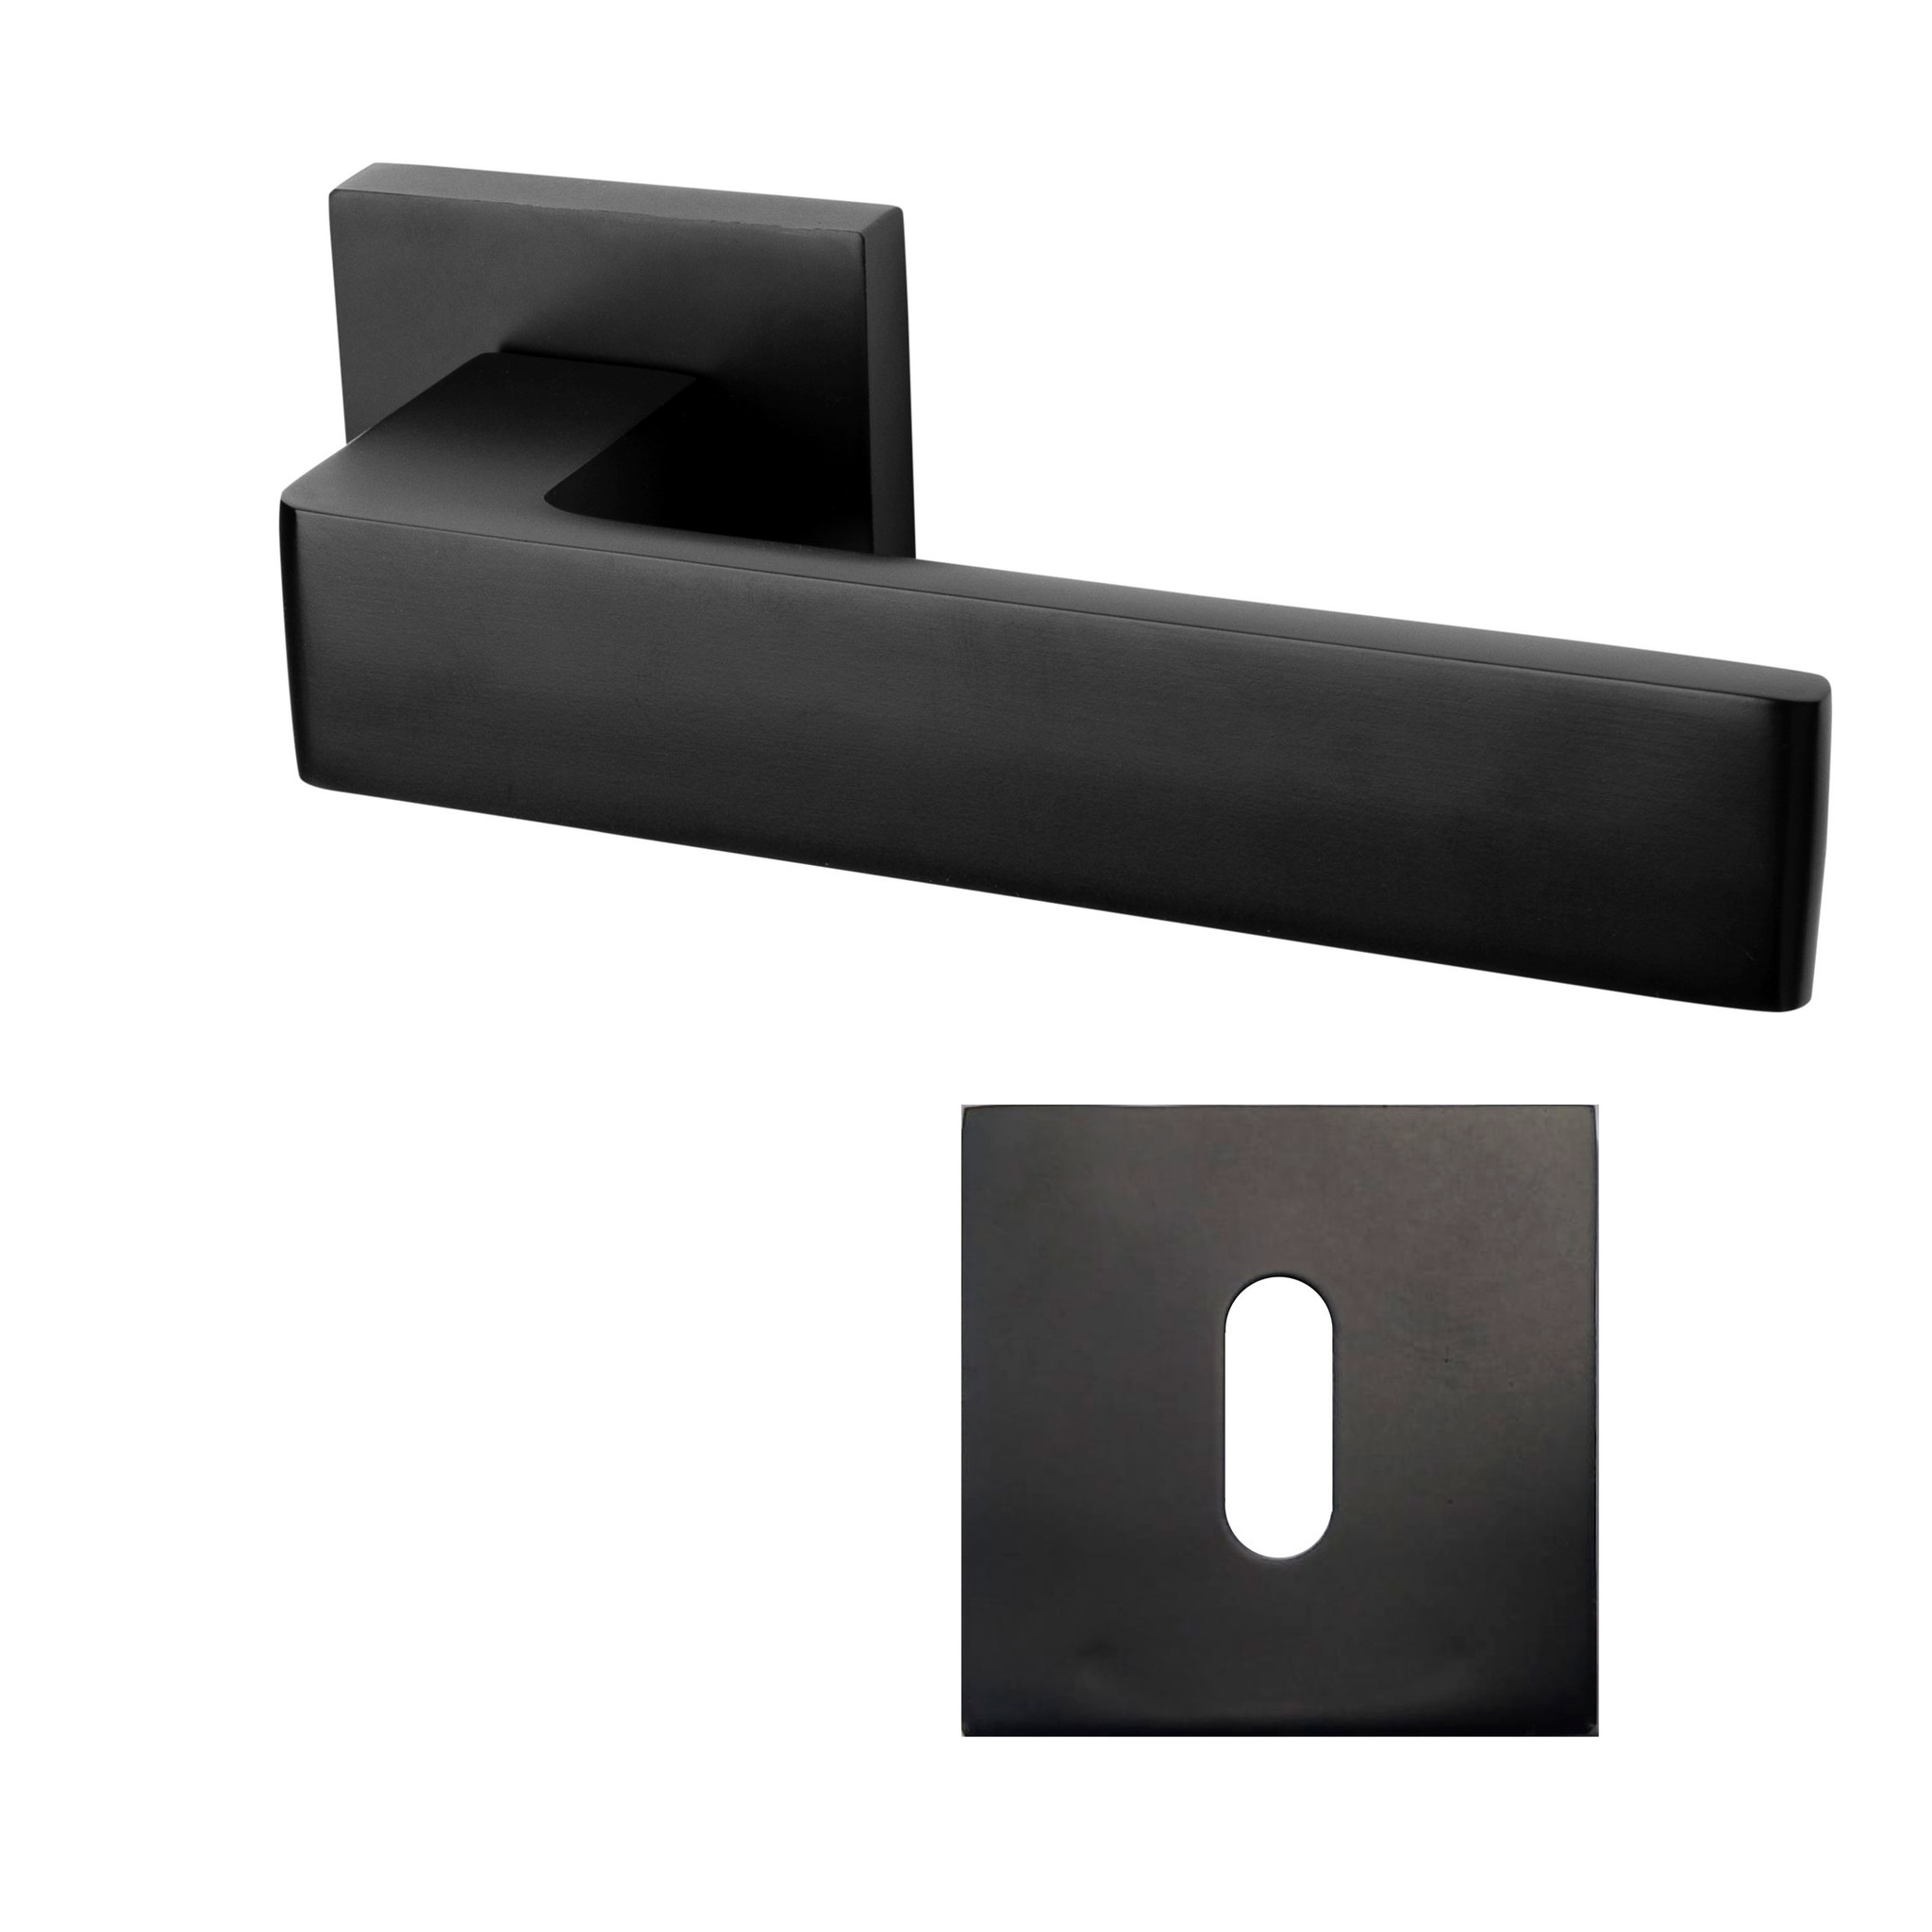 Mooi Deurbeslag Deurklink Nova21 geveerd zwart met vierkante sleutelrozetten